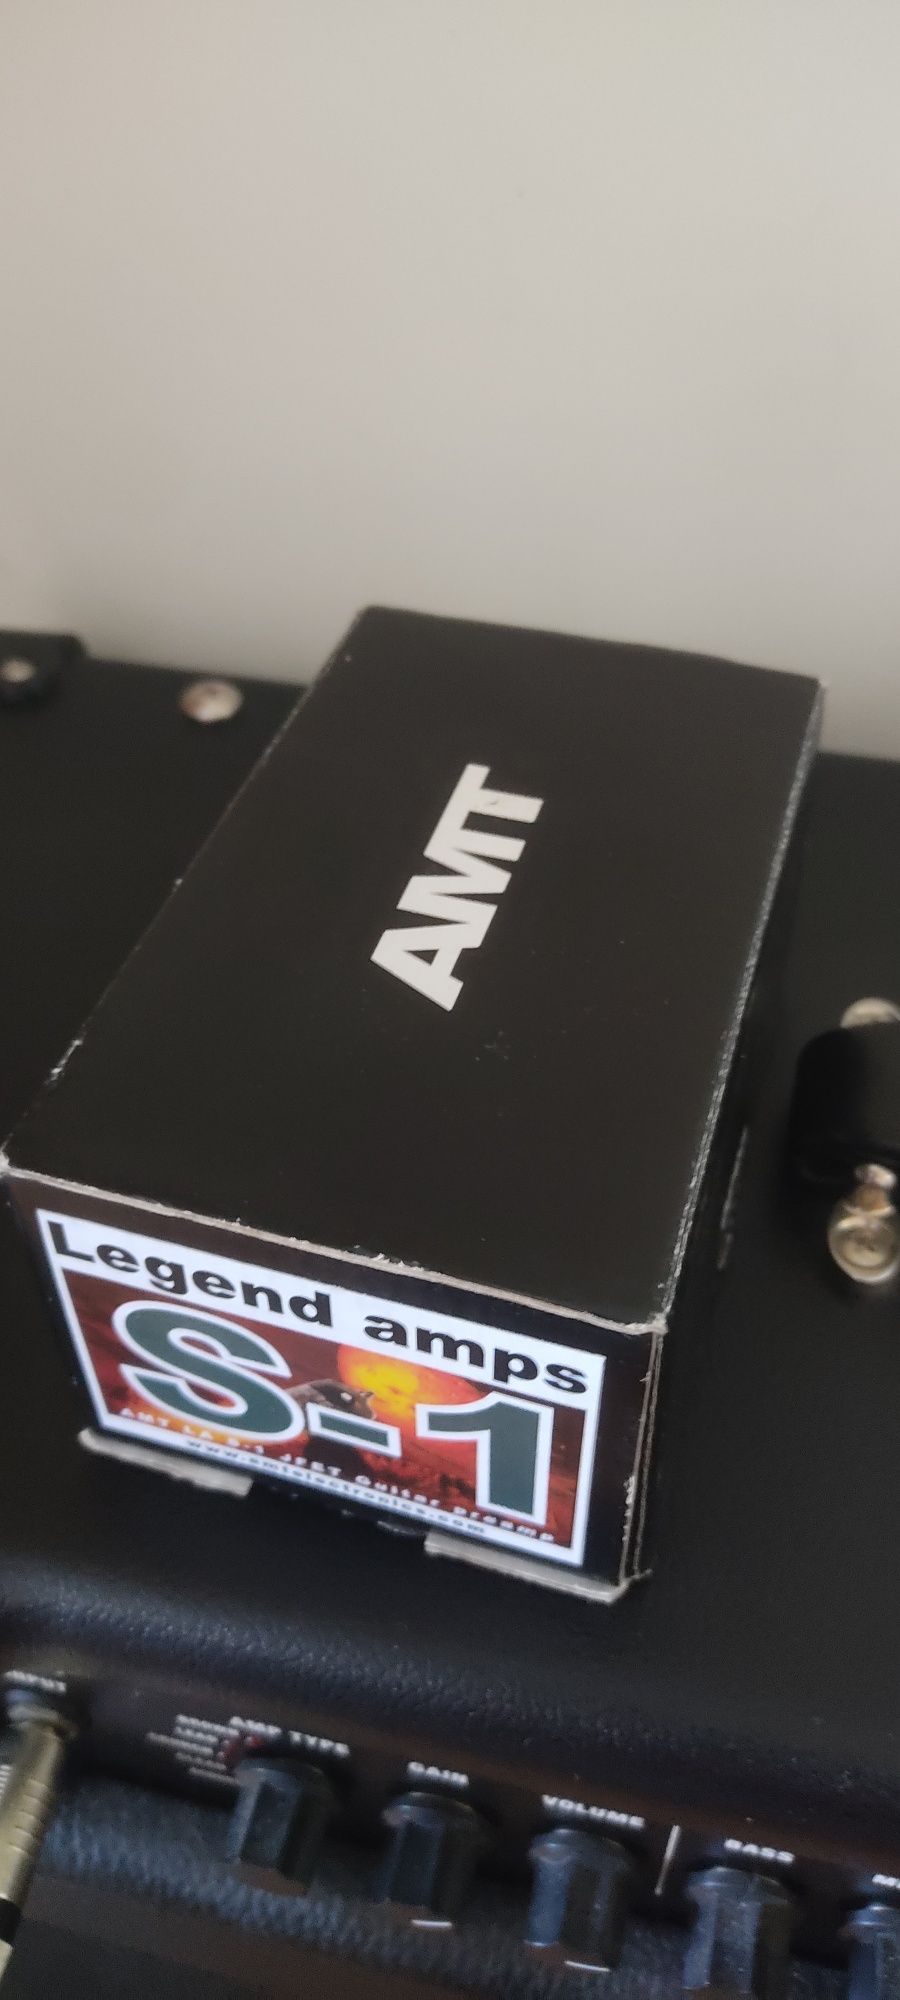 AMT S1 legend amps soldano + Rocktuner PT1